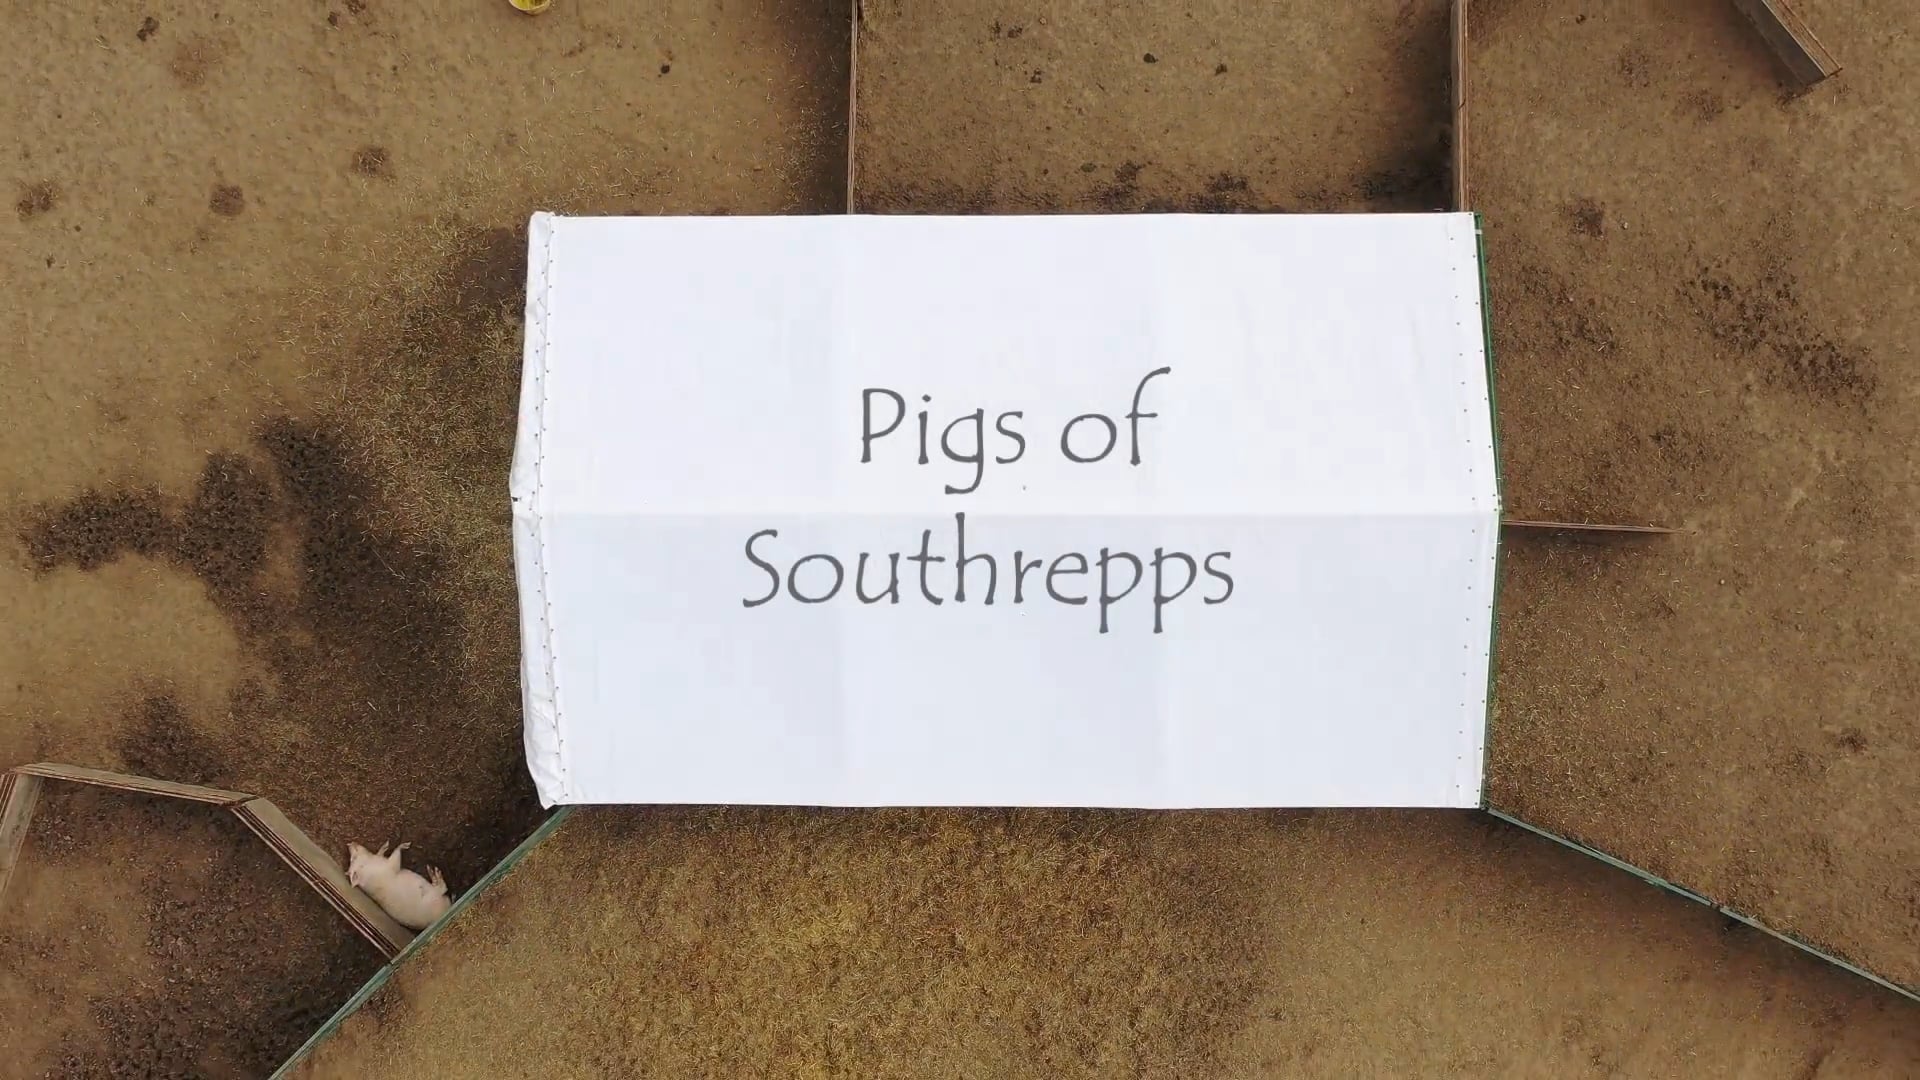 Southrepps - Pigs